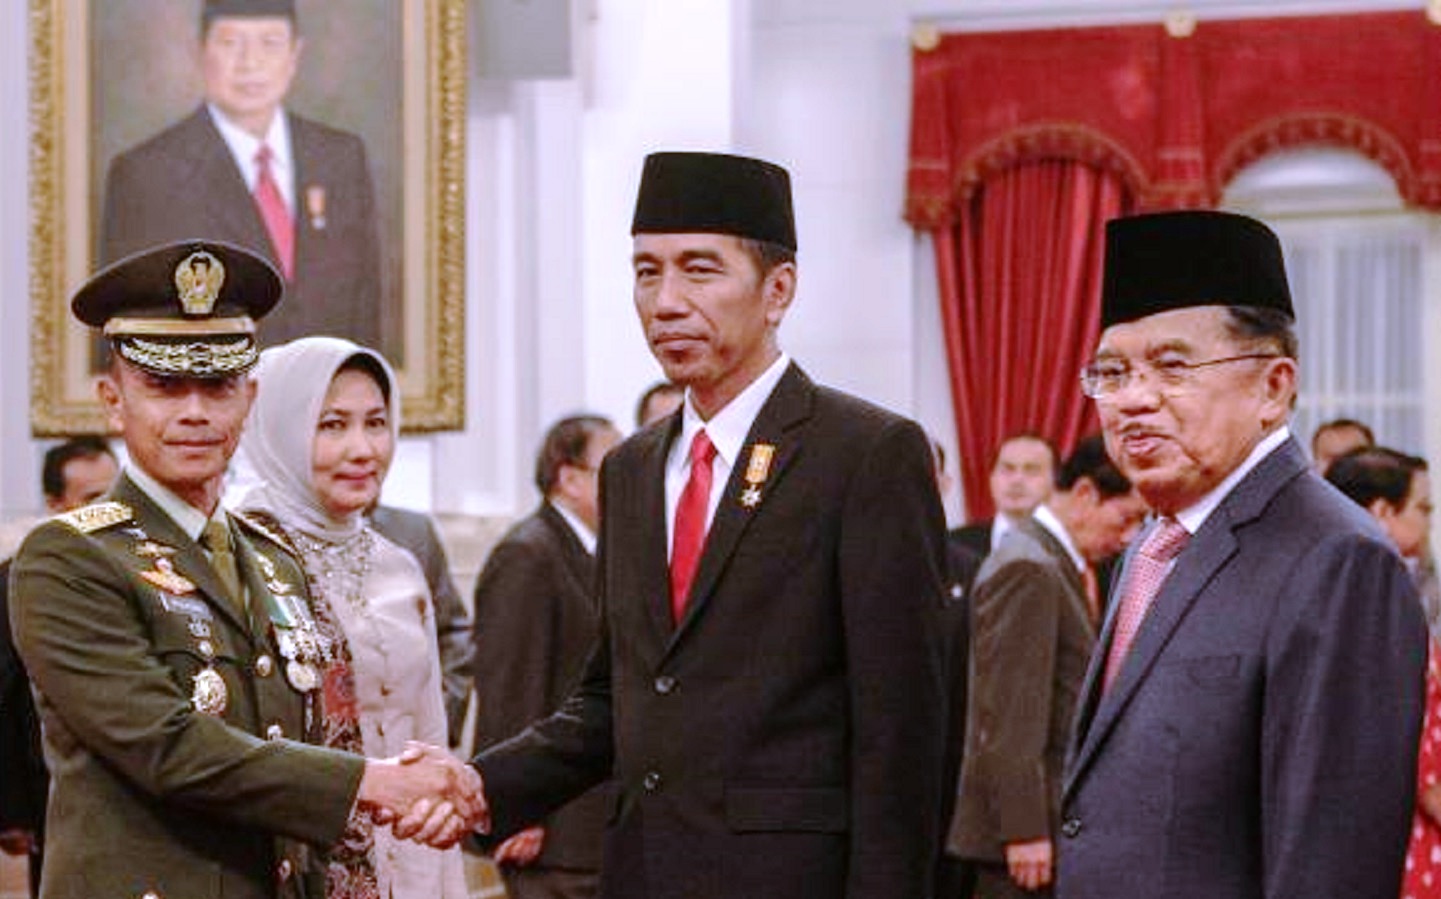 Jenderal TNI Mulyono di momentum pelantikannya sebagai KSAD, berjabat tangan dengan Presiden Jokowi bersama Wapres Jusuf Kalla (tempo.co)